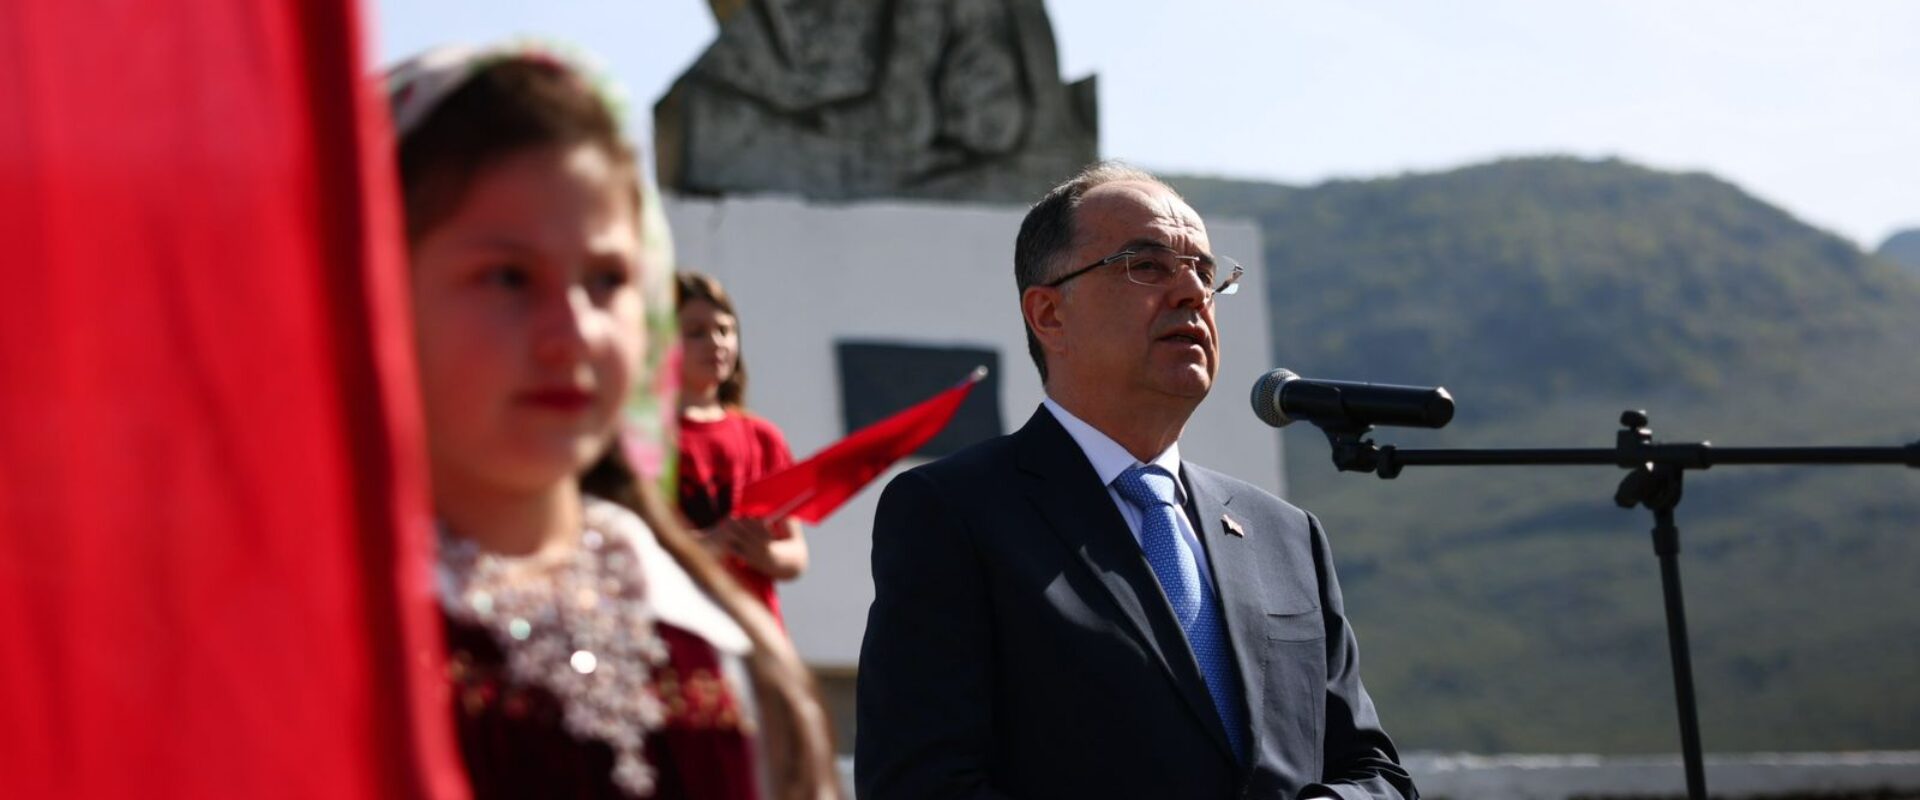 Presidenti i Republikës së Shqipërisë, Sh. T. Z. Bajram Begaj, përkujtoi sot 113-vjetorin e kryengritjes së Malësisë së Madhe